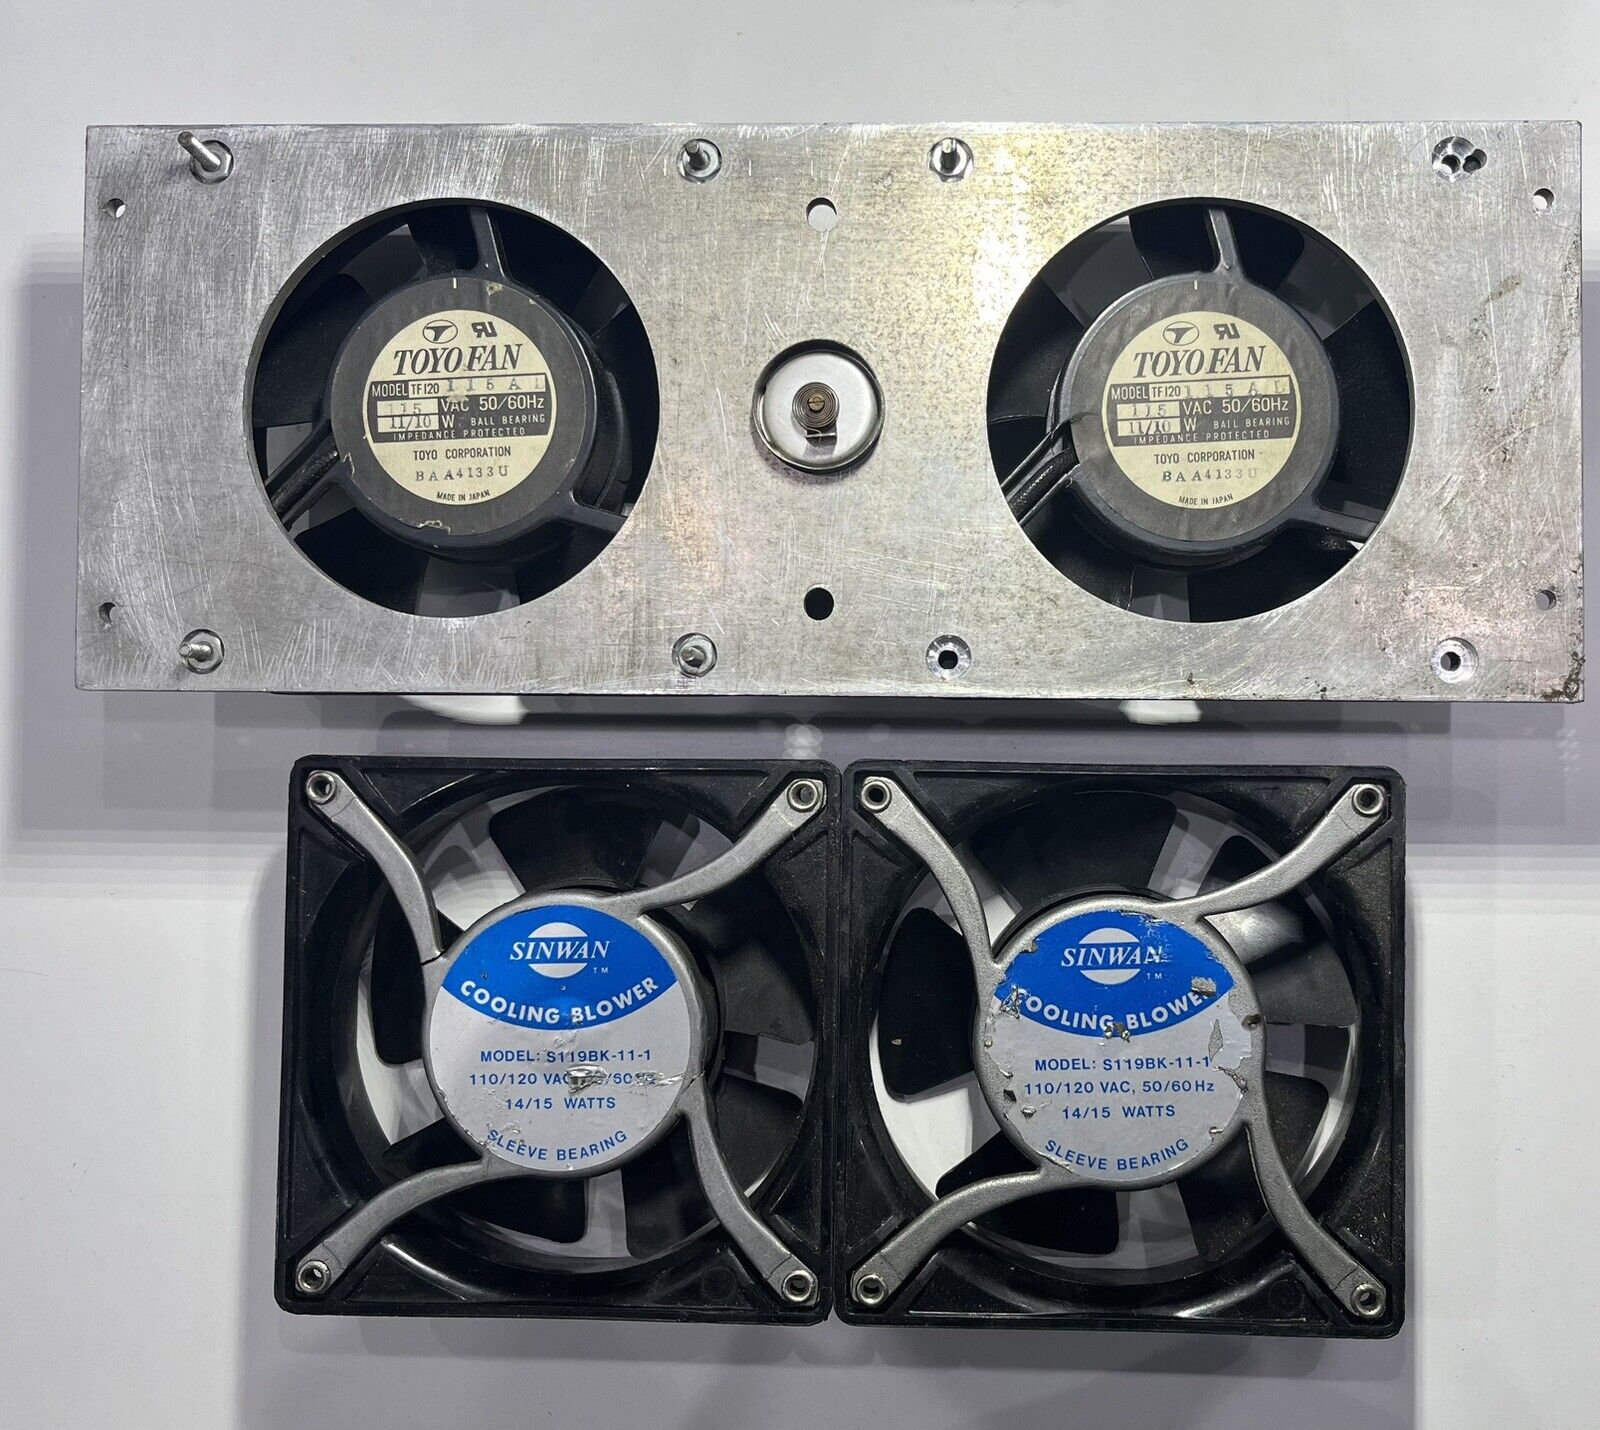 Toyo Fan Sinwan Computer Blower Cooling Fan Panel Exhaust Mechanical Cabinet Fan